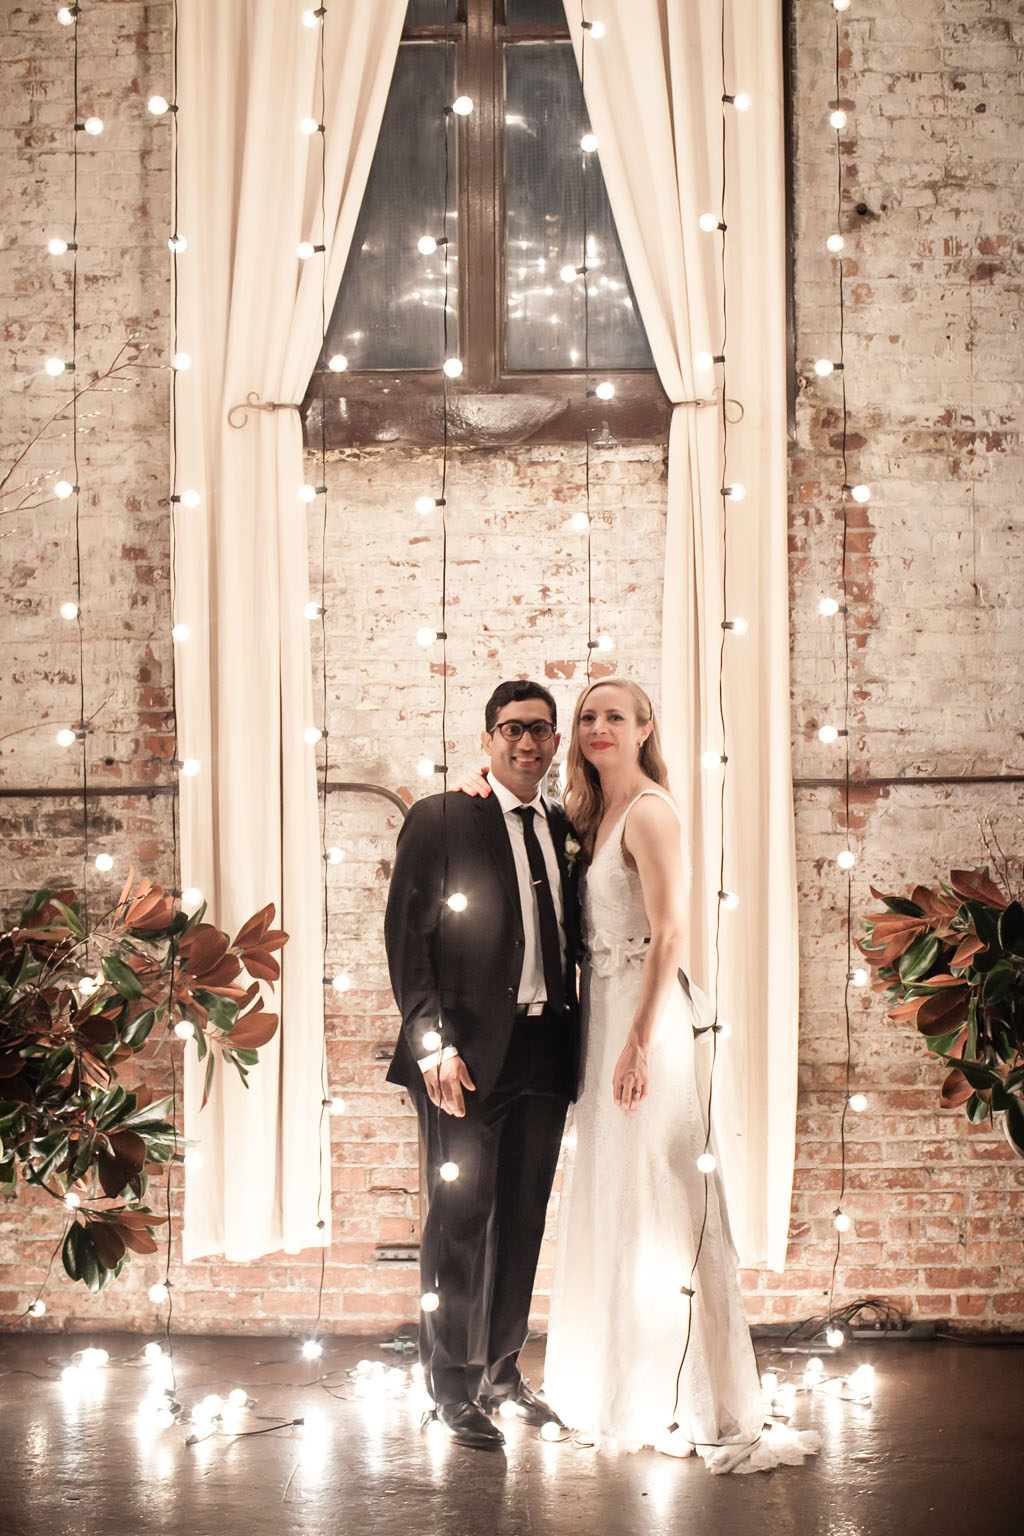 Real wedding: Lauren + Soubhik